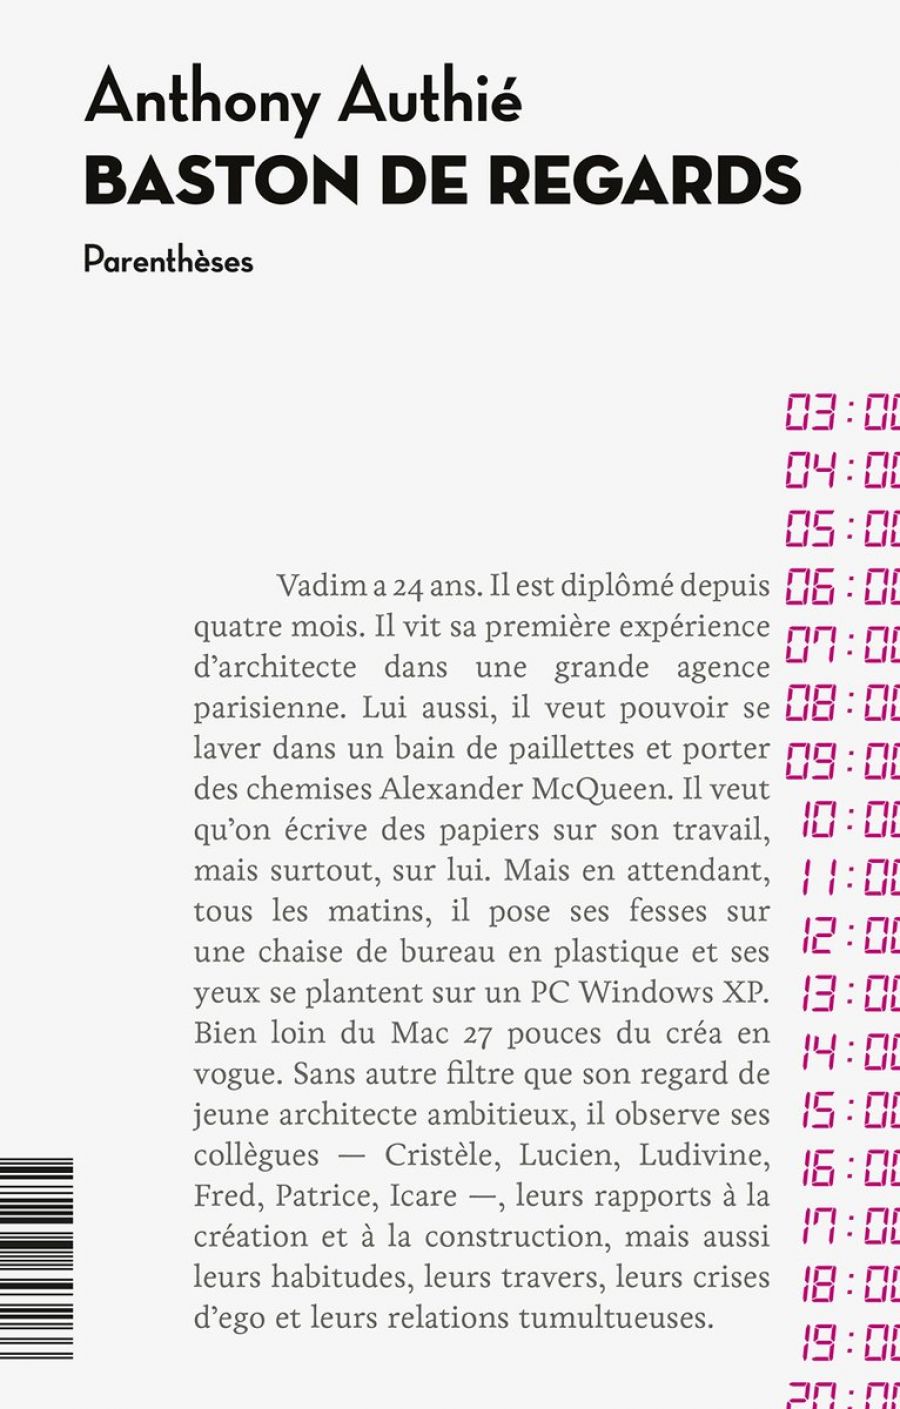 Anthony Authié, Baston de regards, Editions Parenthèses, Marseille, 2018